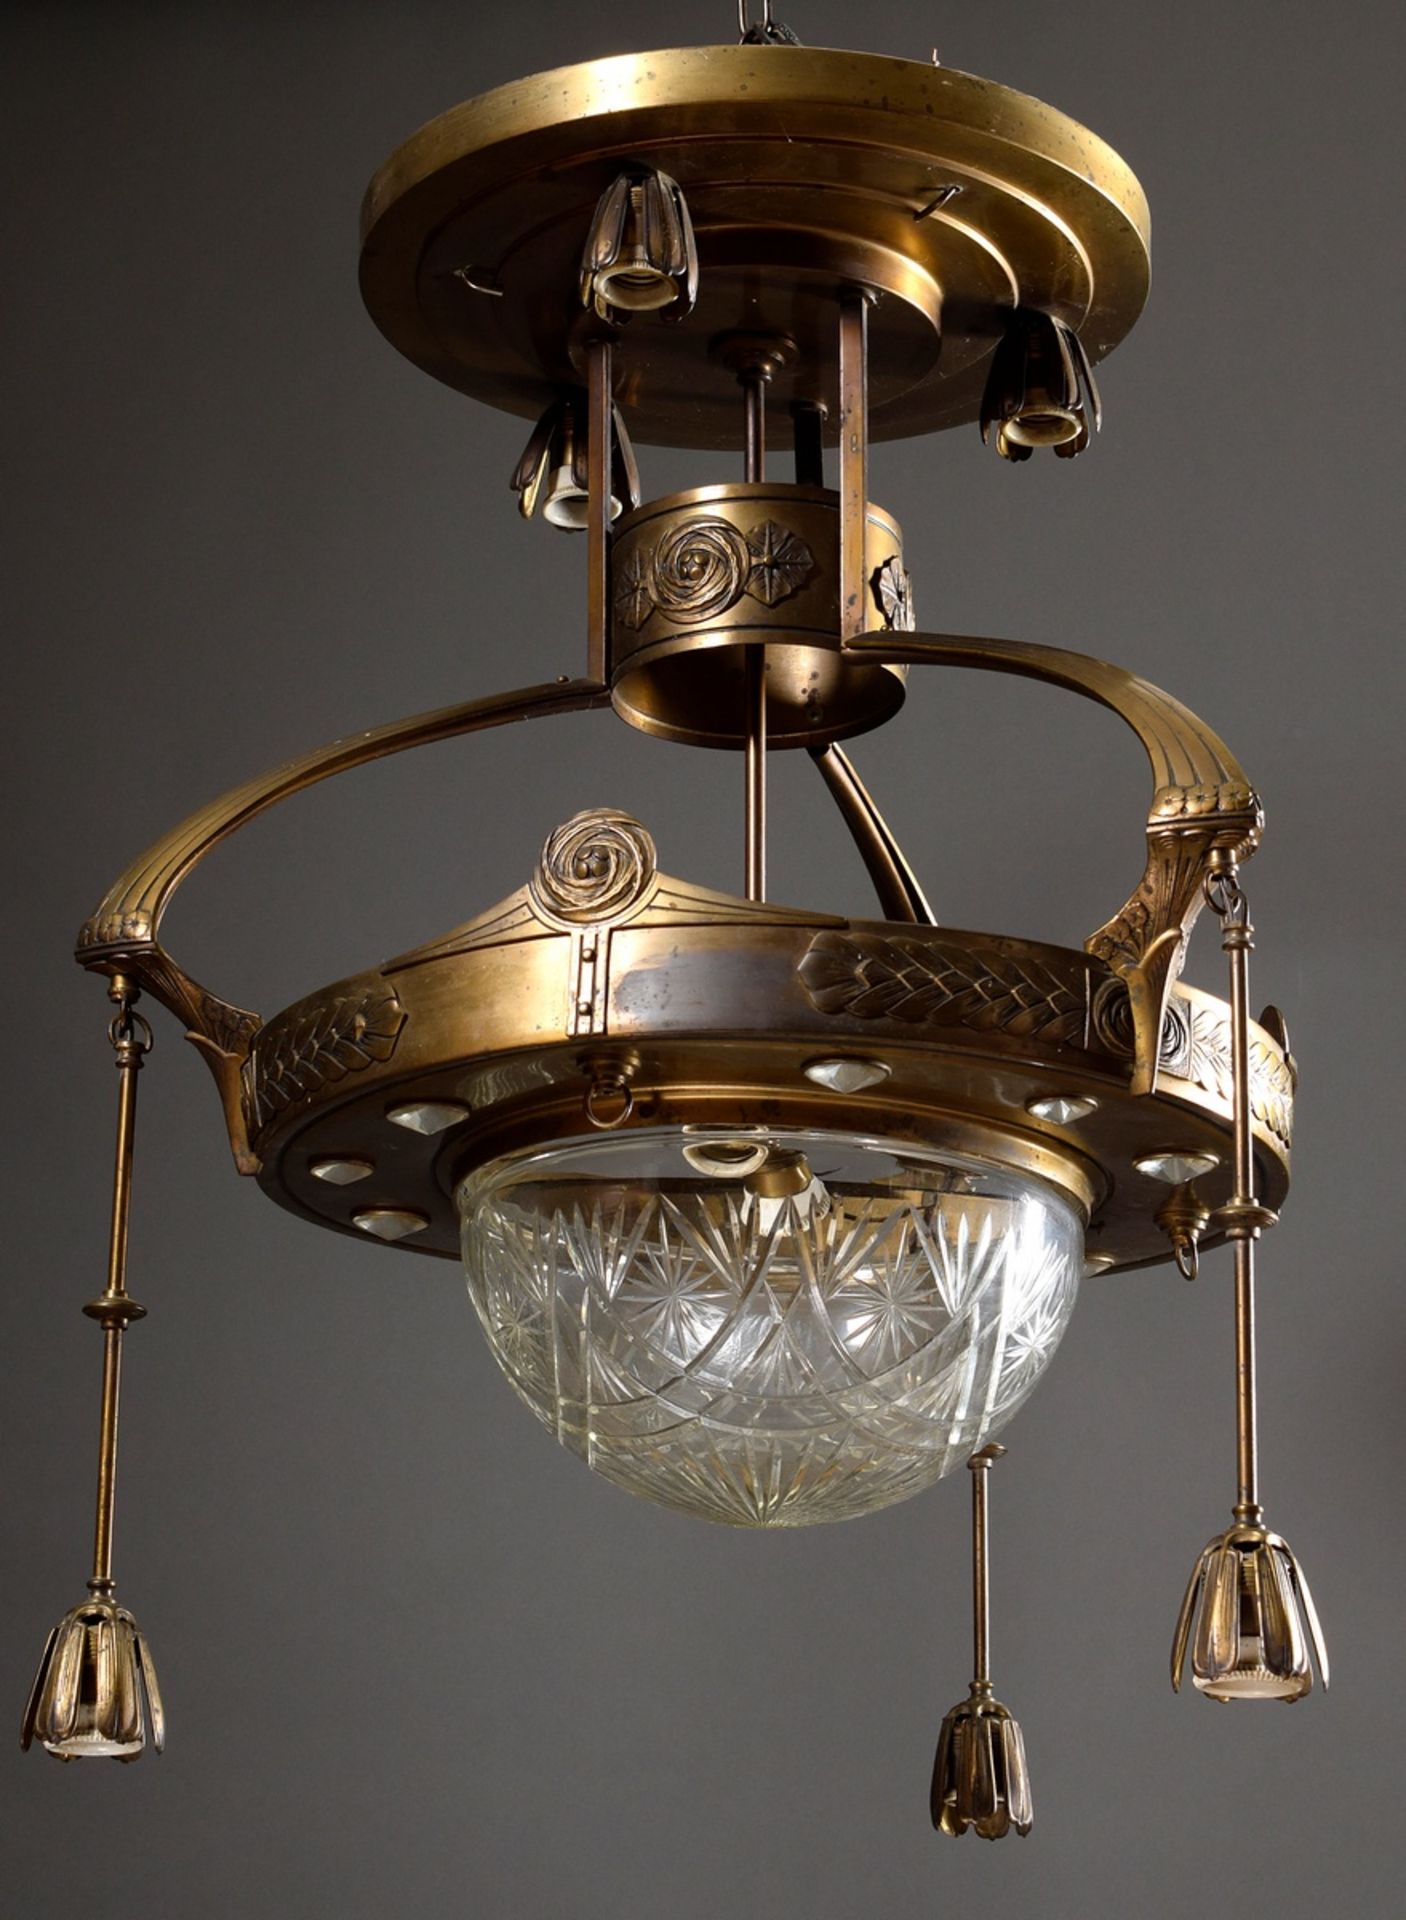 Jugendstil Deckenlampe mit geschliffener Glaskuppel und hängenden Lichtquellen in gepunztem Messing